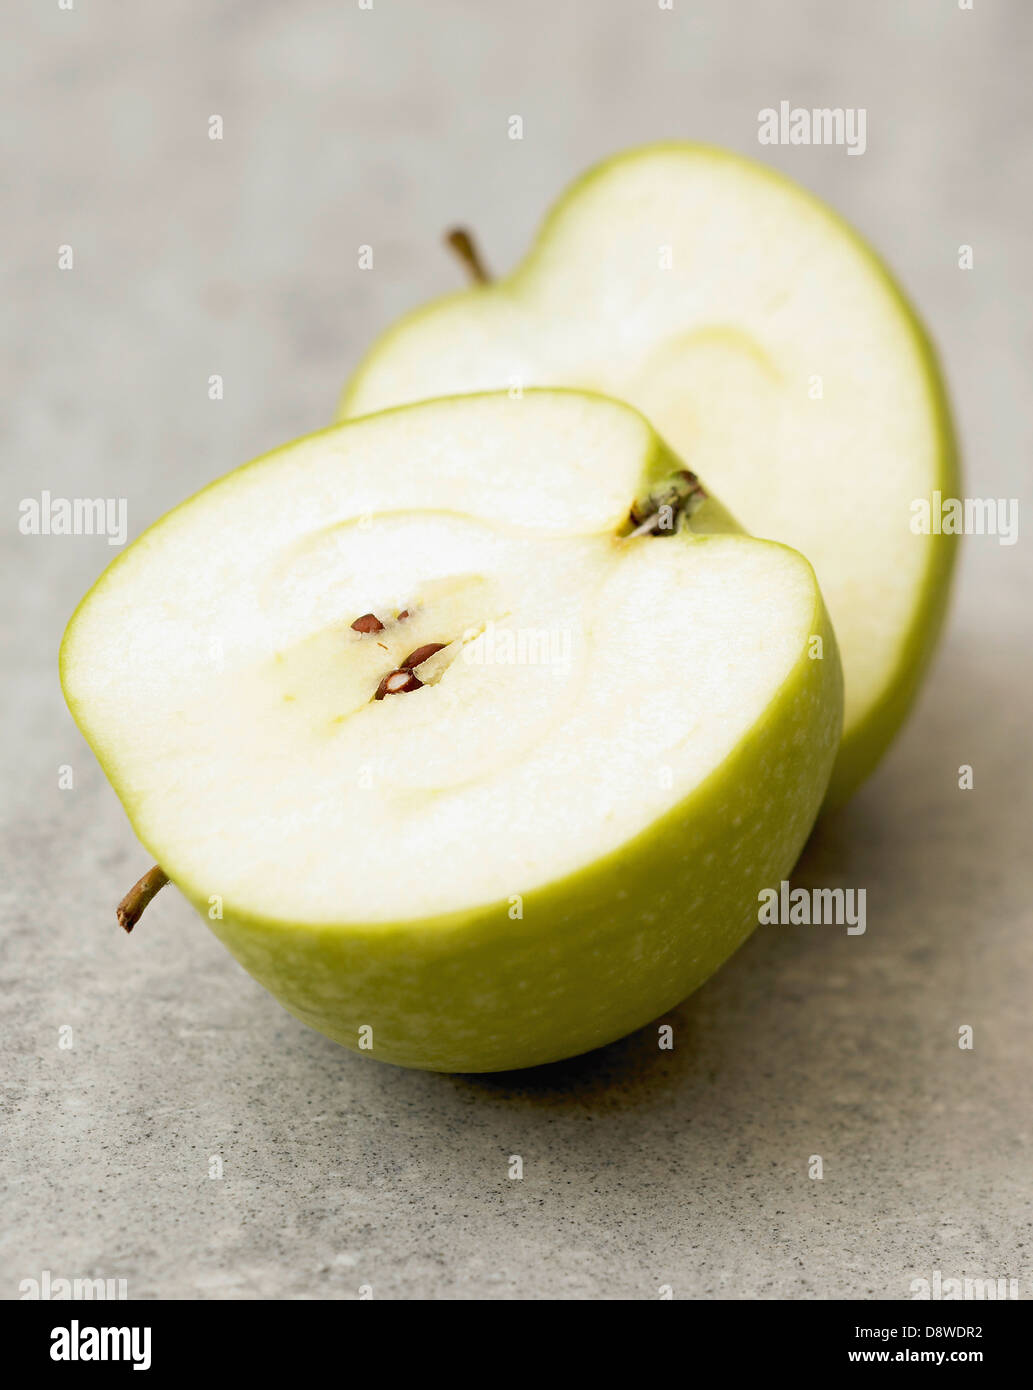 Granny Smith apple cut in half Stock Photo